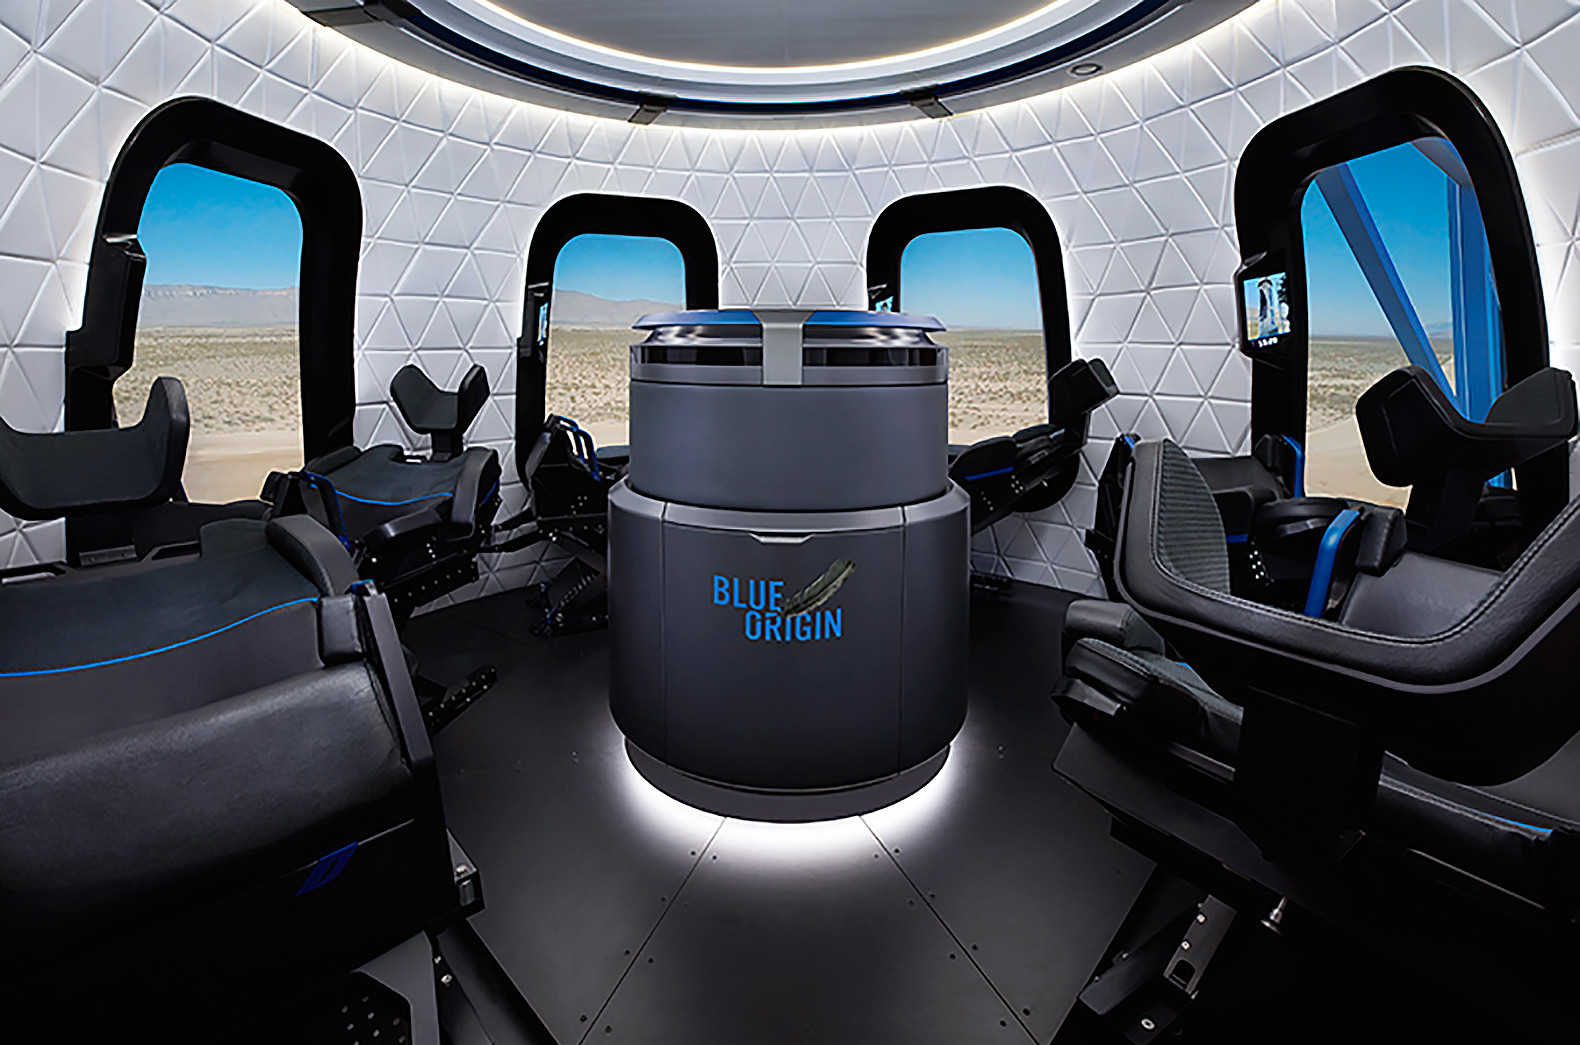 Feu vert pour Virgin Galactic, décollage prévu pour Blue Origin, la bataille surborbitale reprend